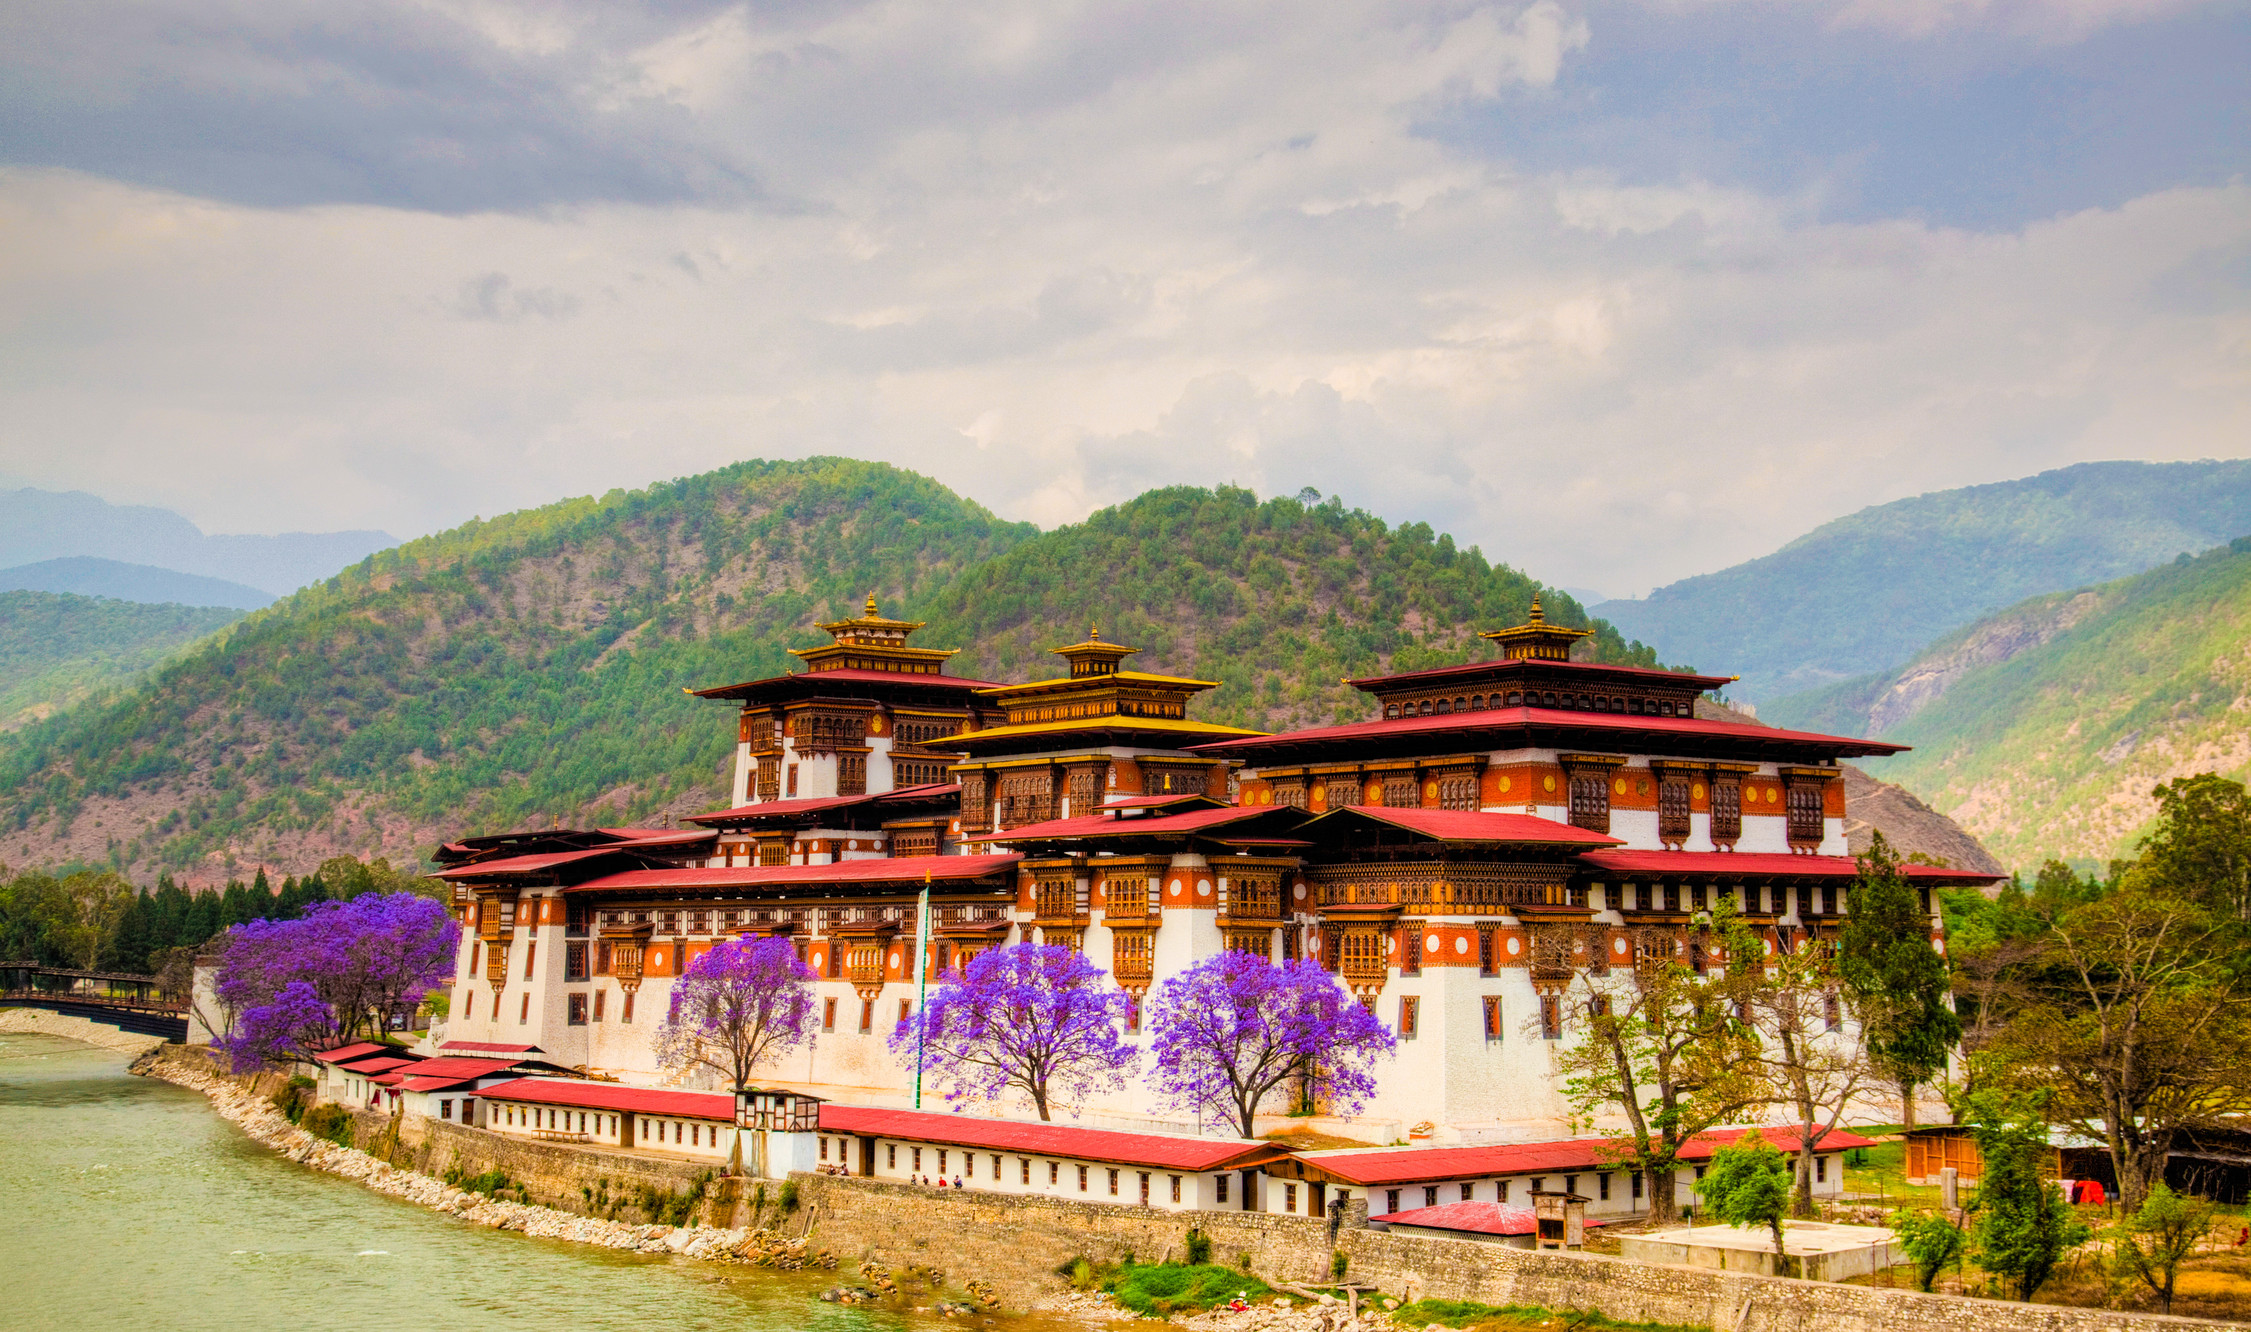 Бутан правление. Королевство бутан, Тхимпху. Бутан Гималаи. Тхимпху — столица королевства бутан. Крепость монастырь Пунакха-дзонг бутан.